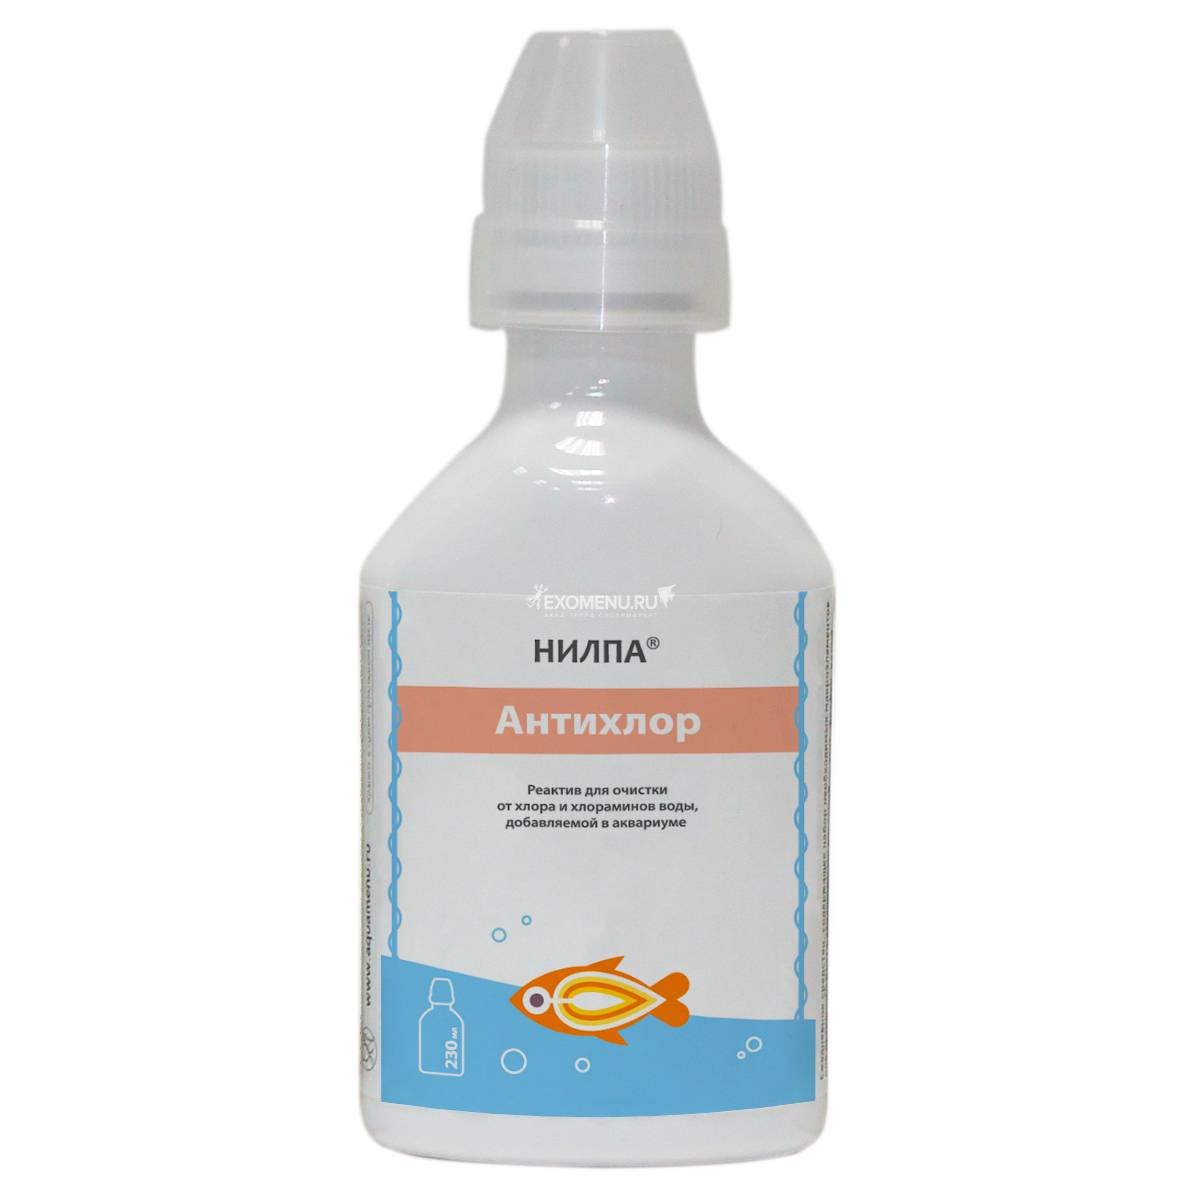 Реактив Антихлор НИЛПА, 230 мл - реактив для очищения воды от хлора и хлораминов